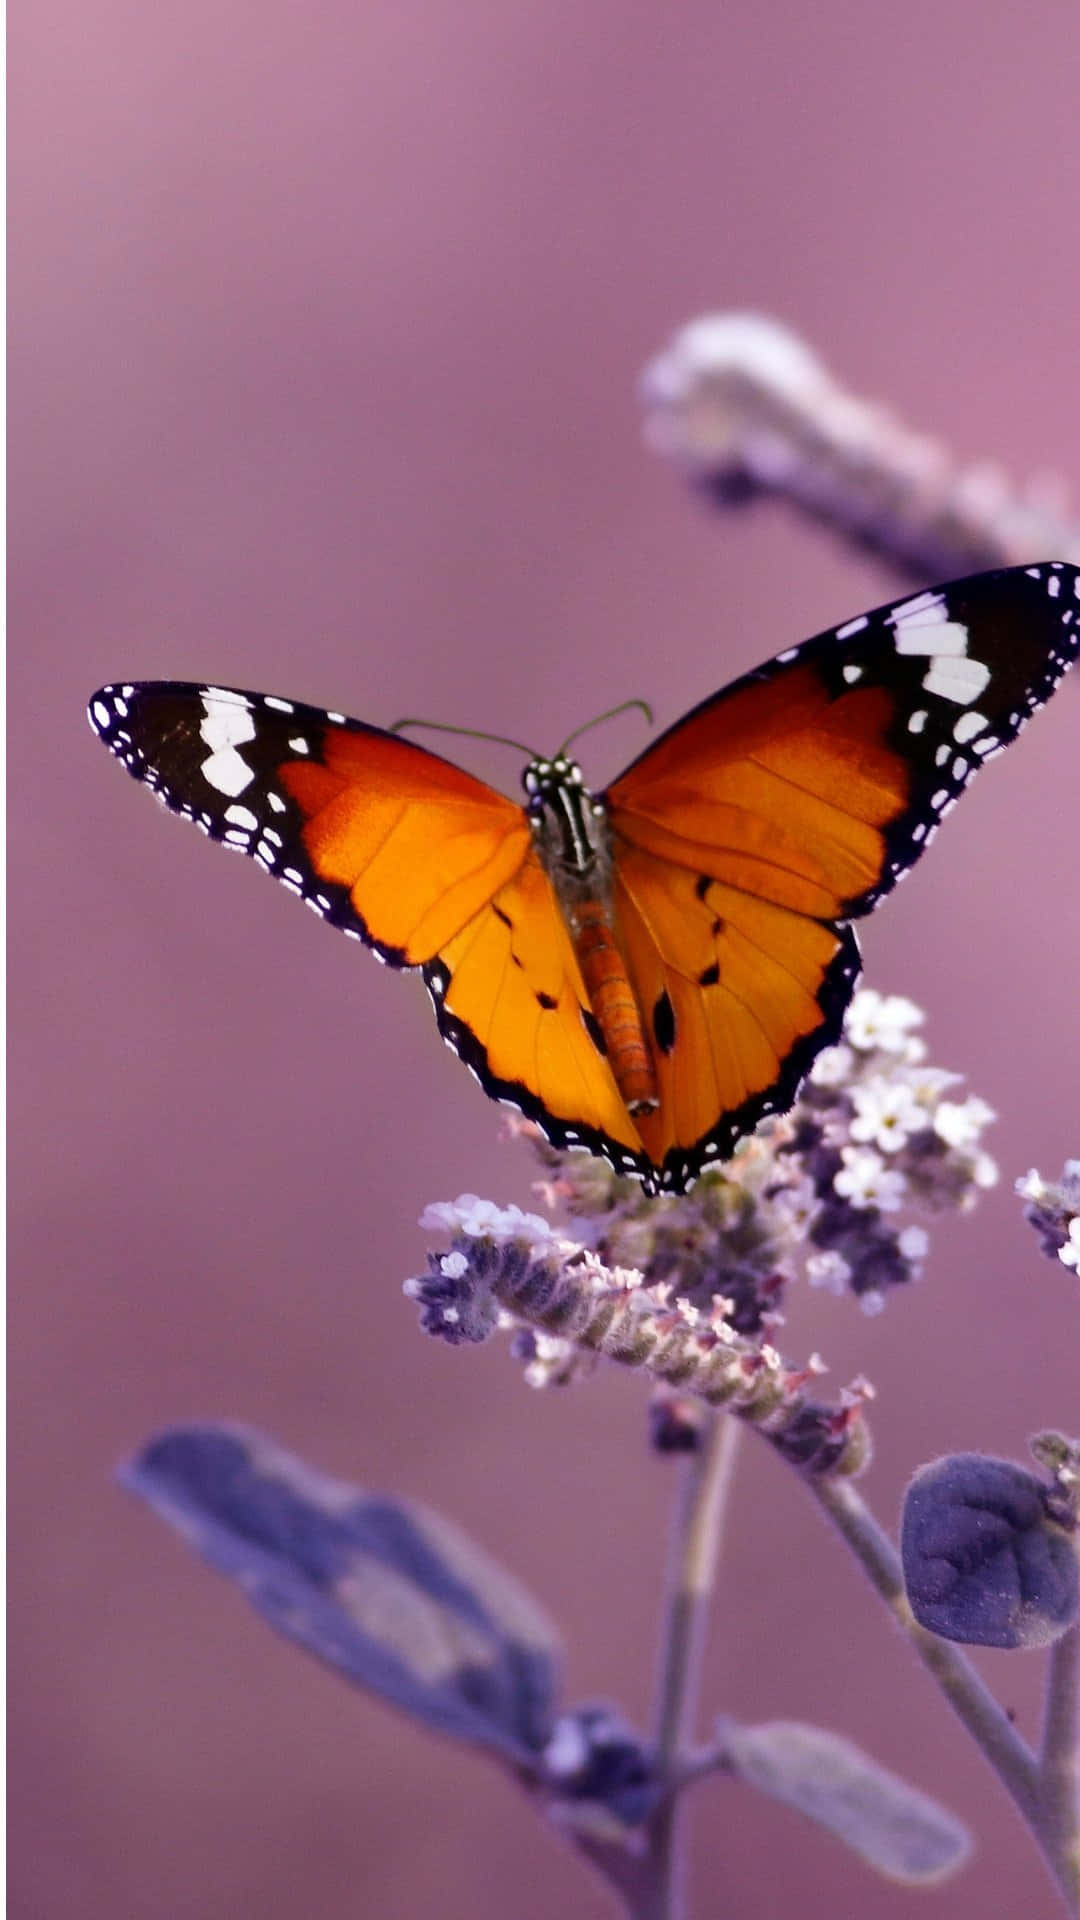 "Beauty in Flight: A Majestic Monarch Butterfly"